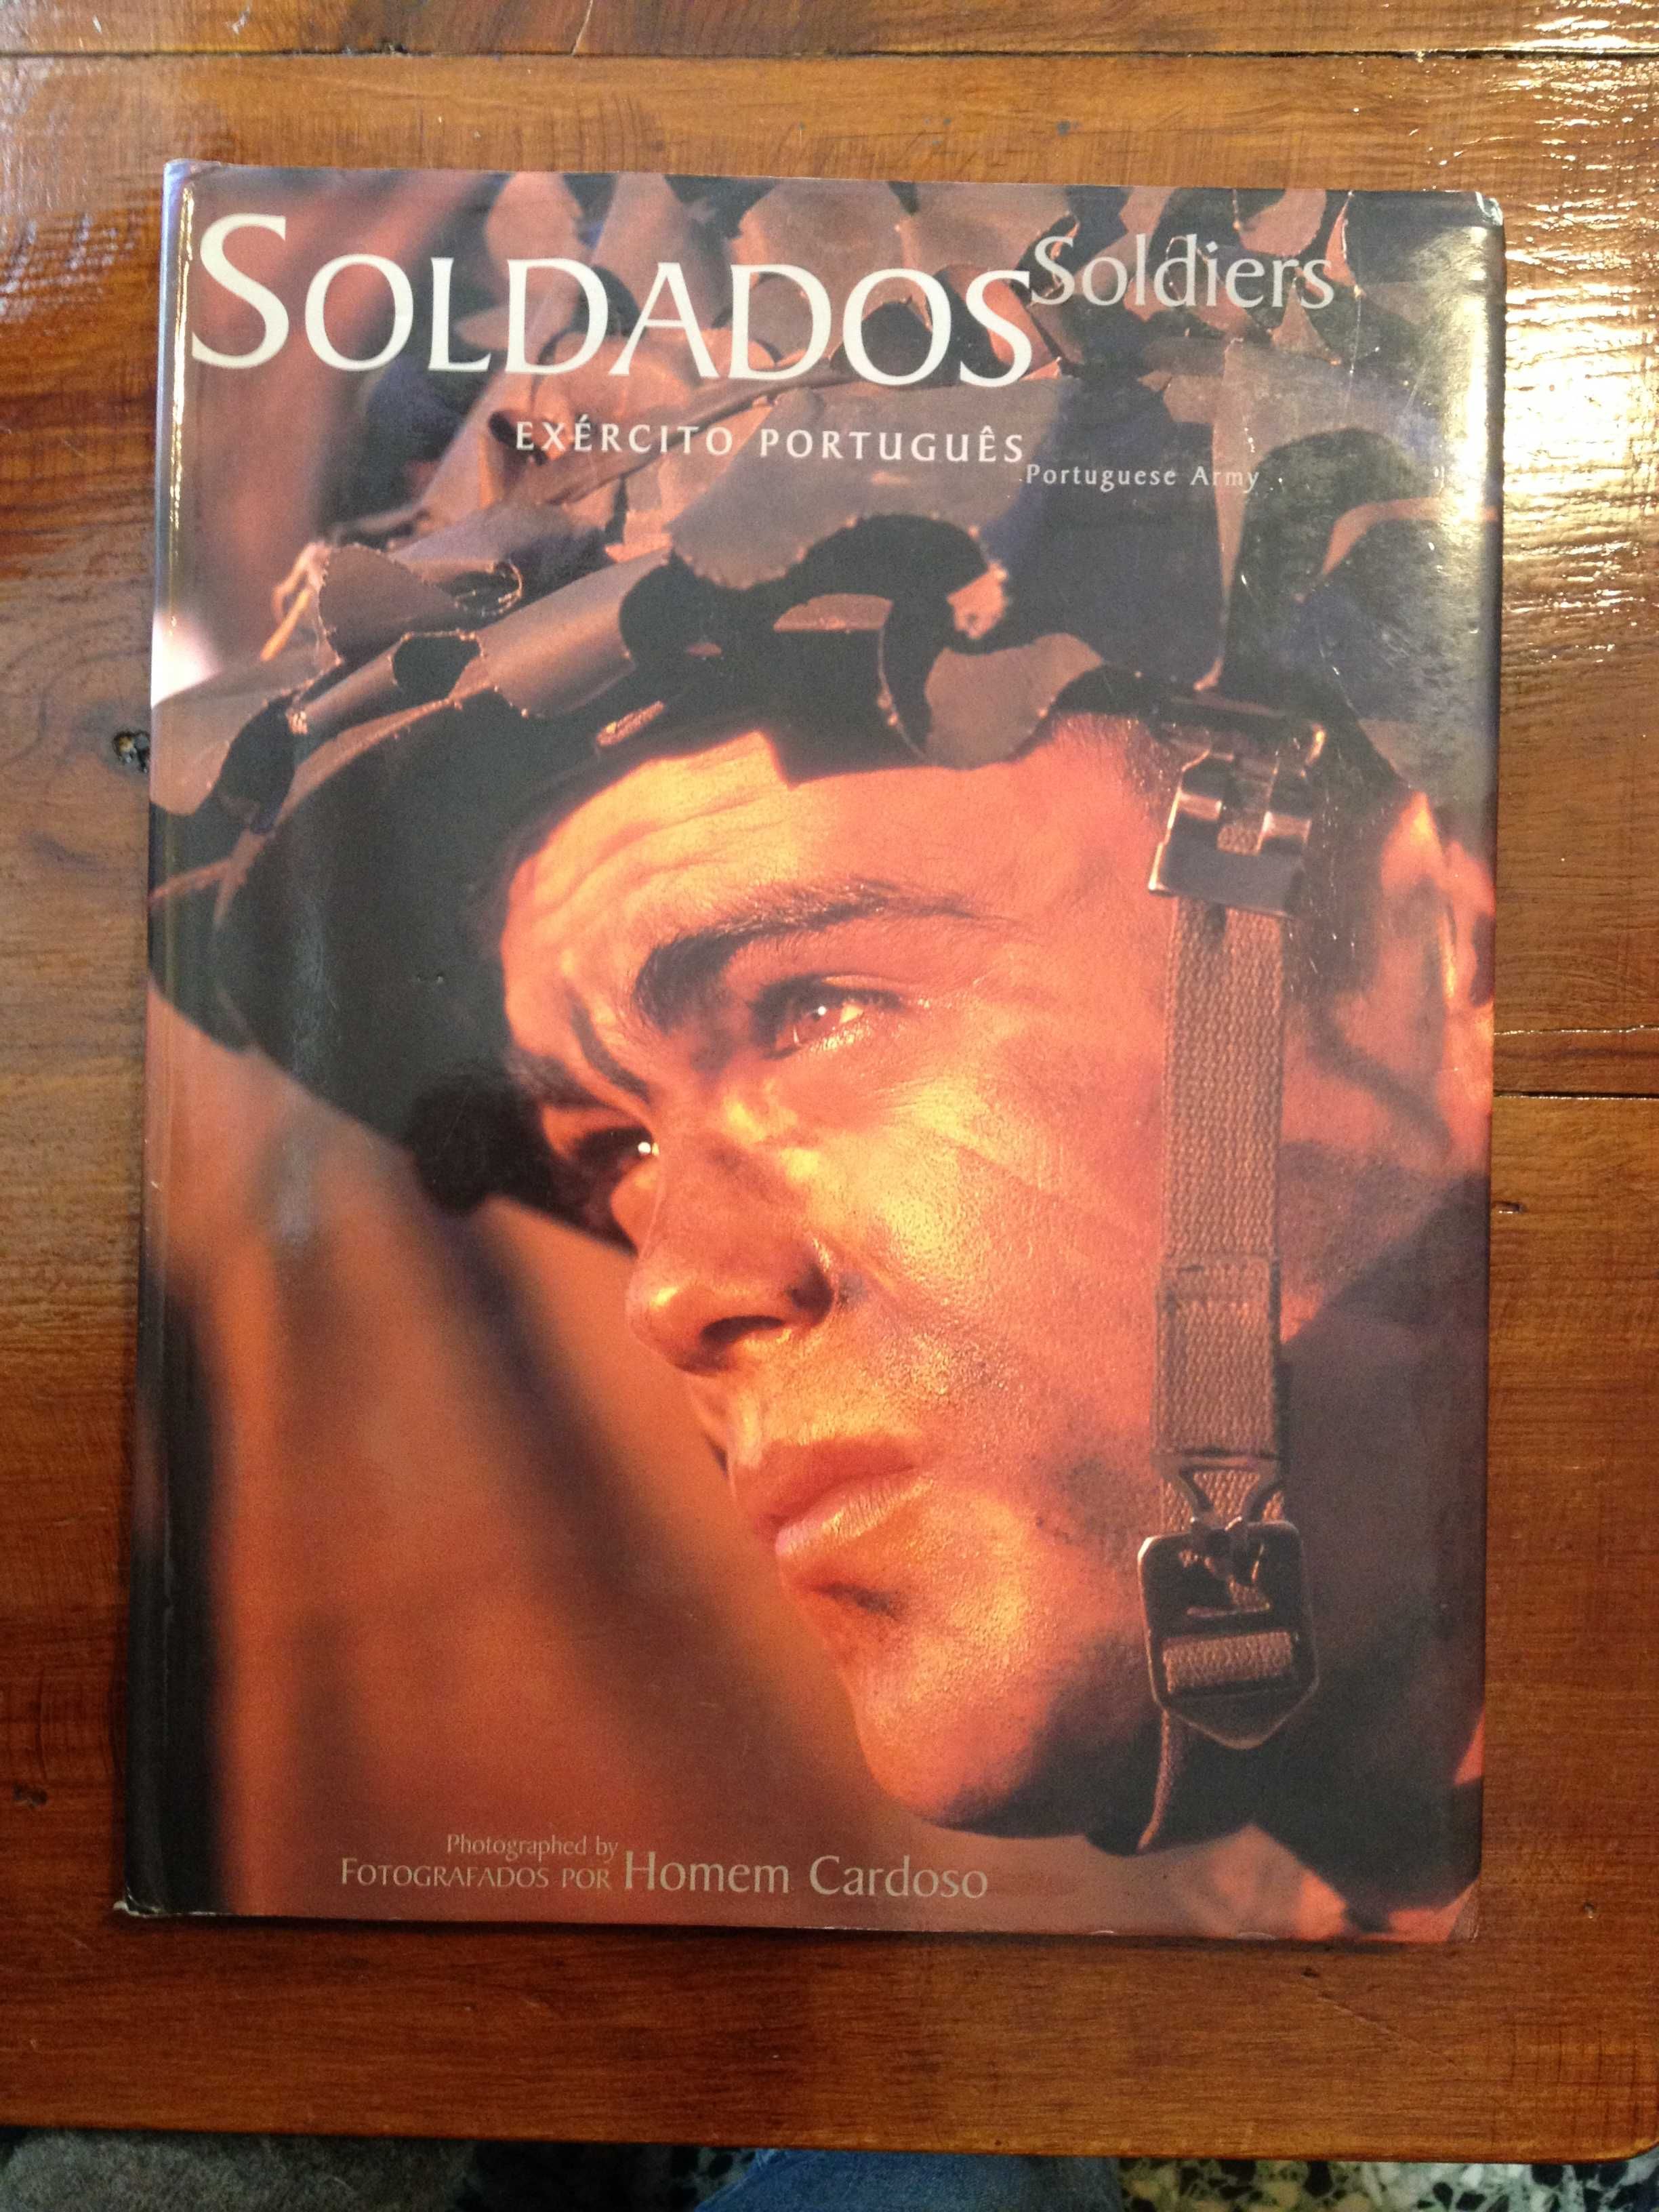 Homem Cardoso (Fotog.) - Soldados, exército Português